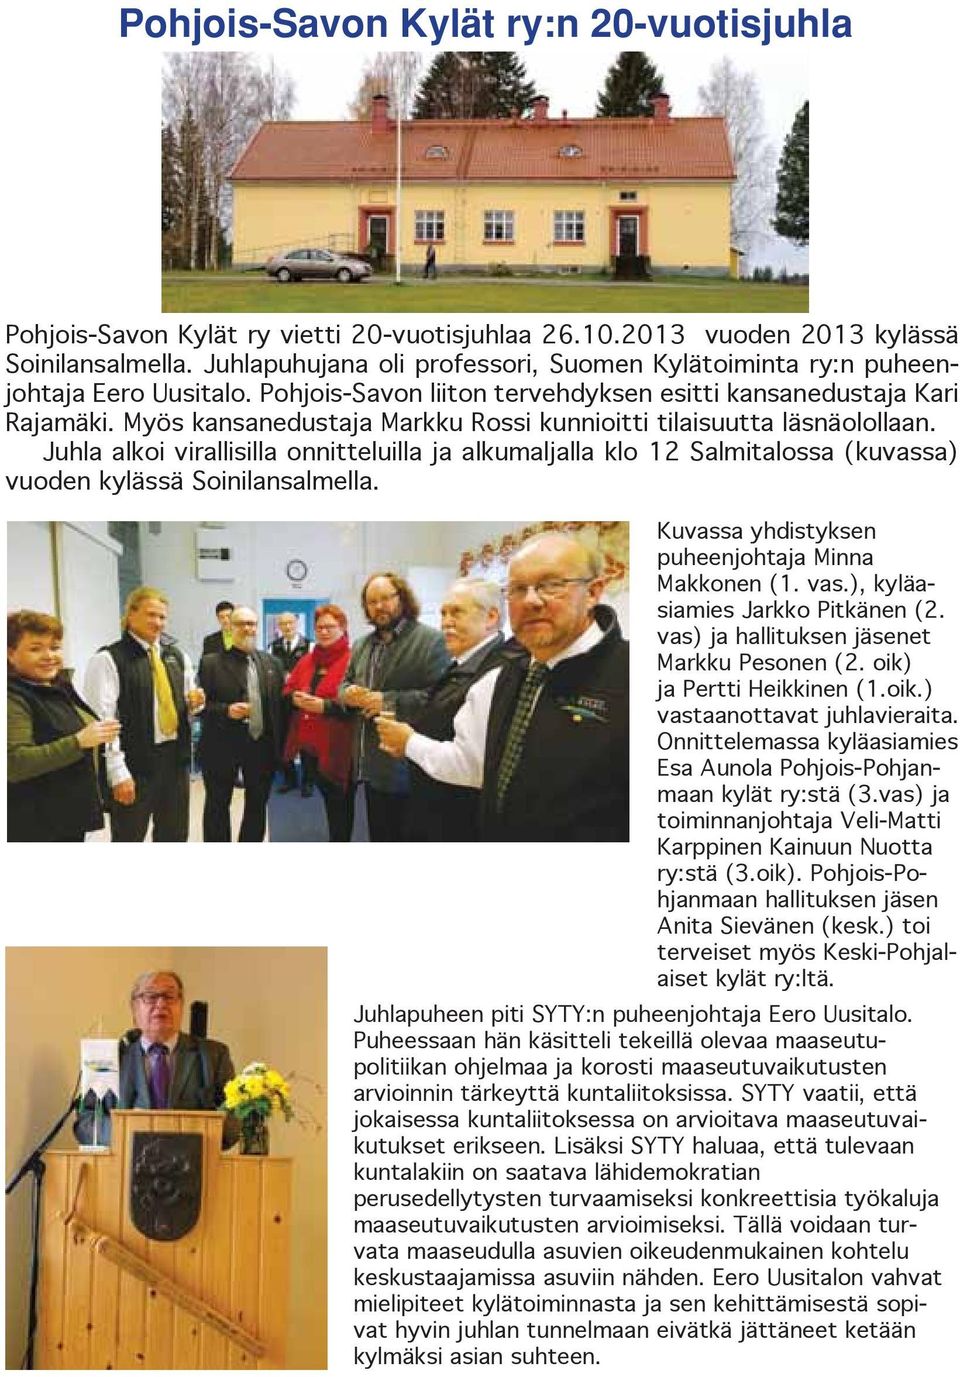 Myös kansanedustaja Markku Rossi kunnioitti tilaisuutta läsnäolollaan. Juhla alkoi virallisilla onnitteluilla ja alkumaljalla klo 12 Salmitalossa (kuvassa) vuoden kylässä Soinilansalmella.